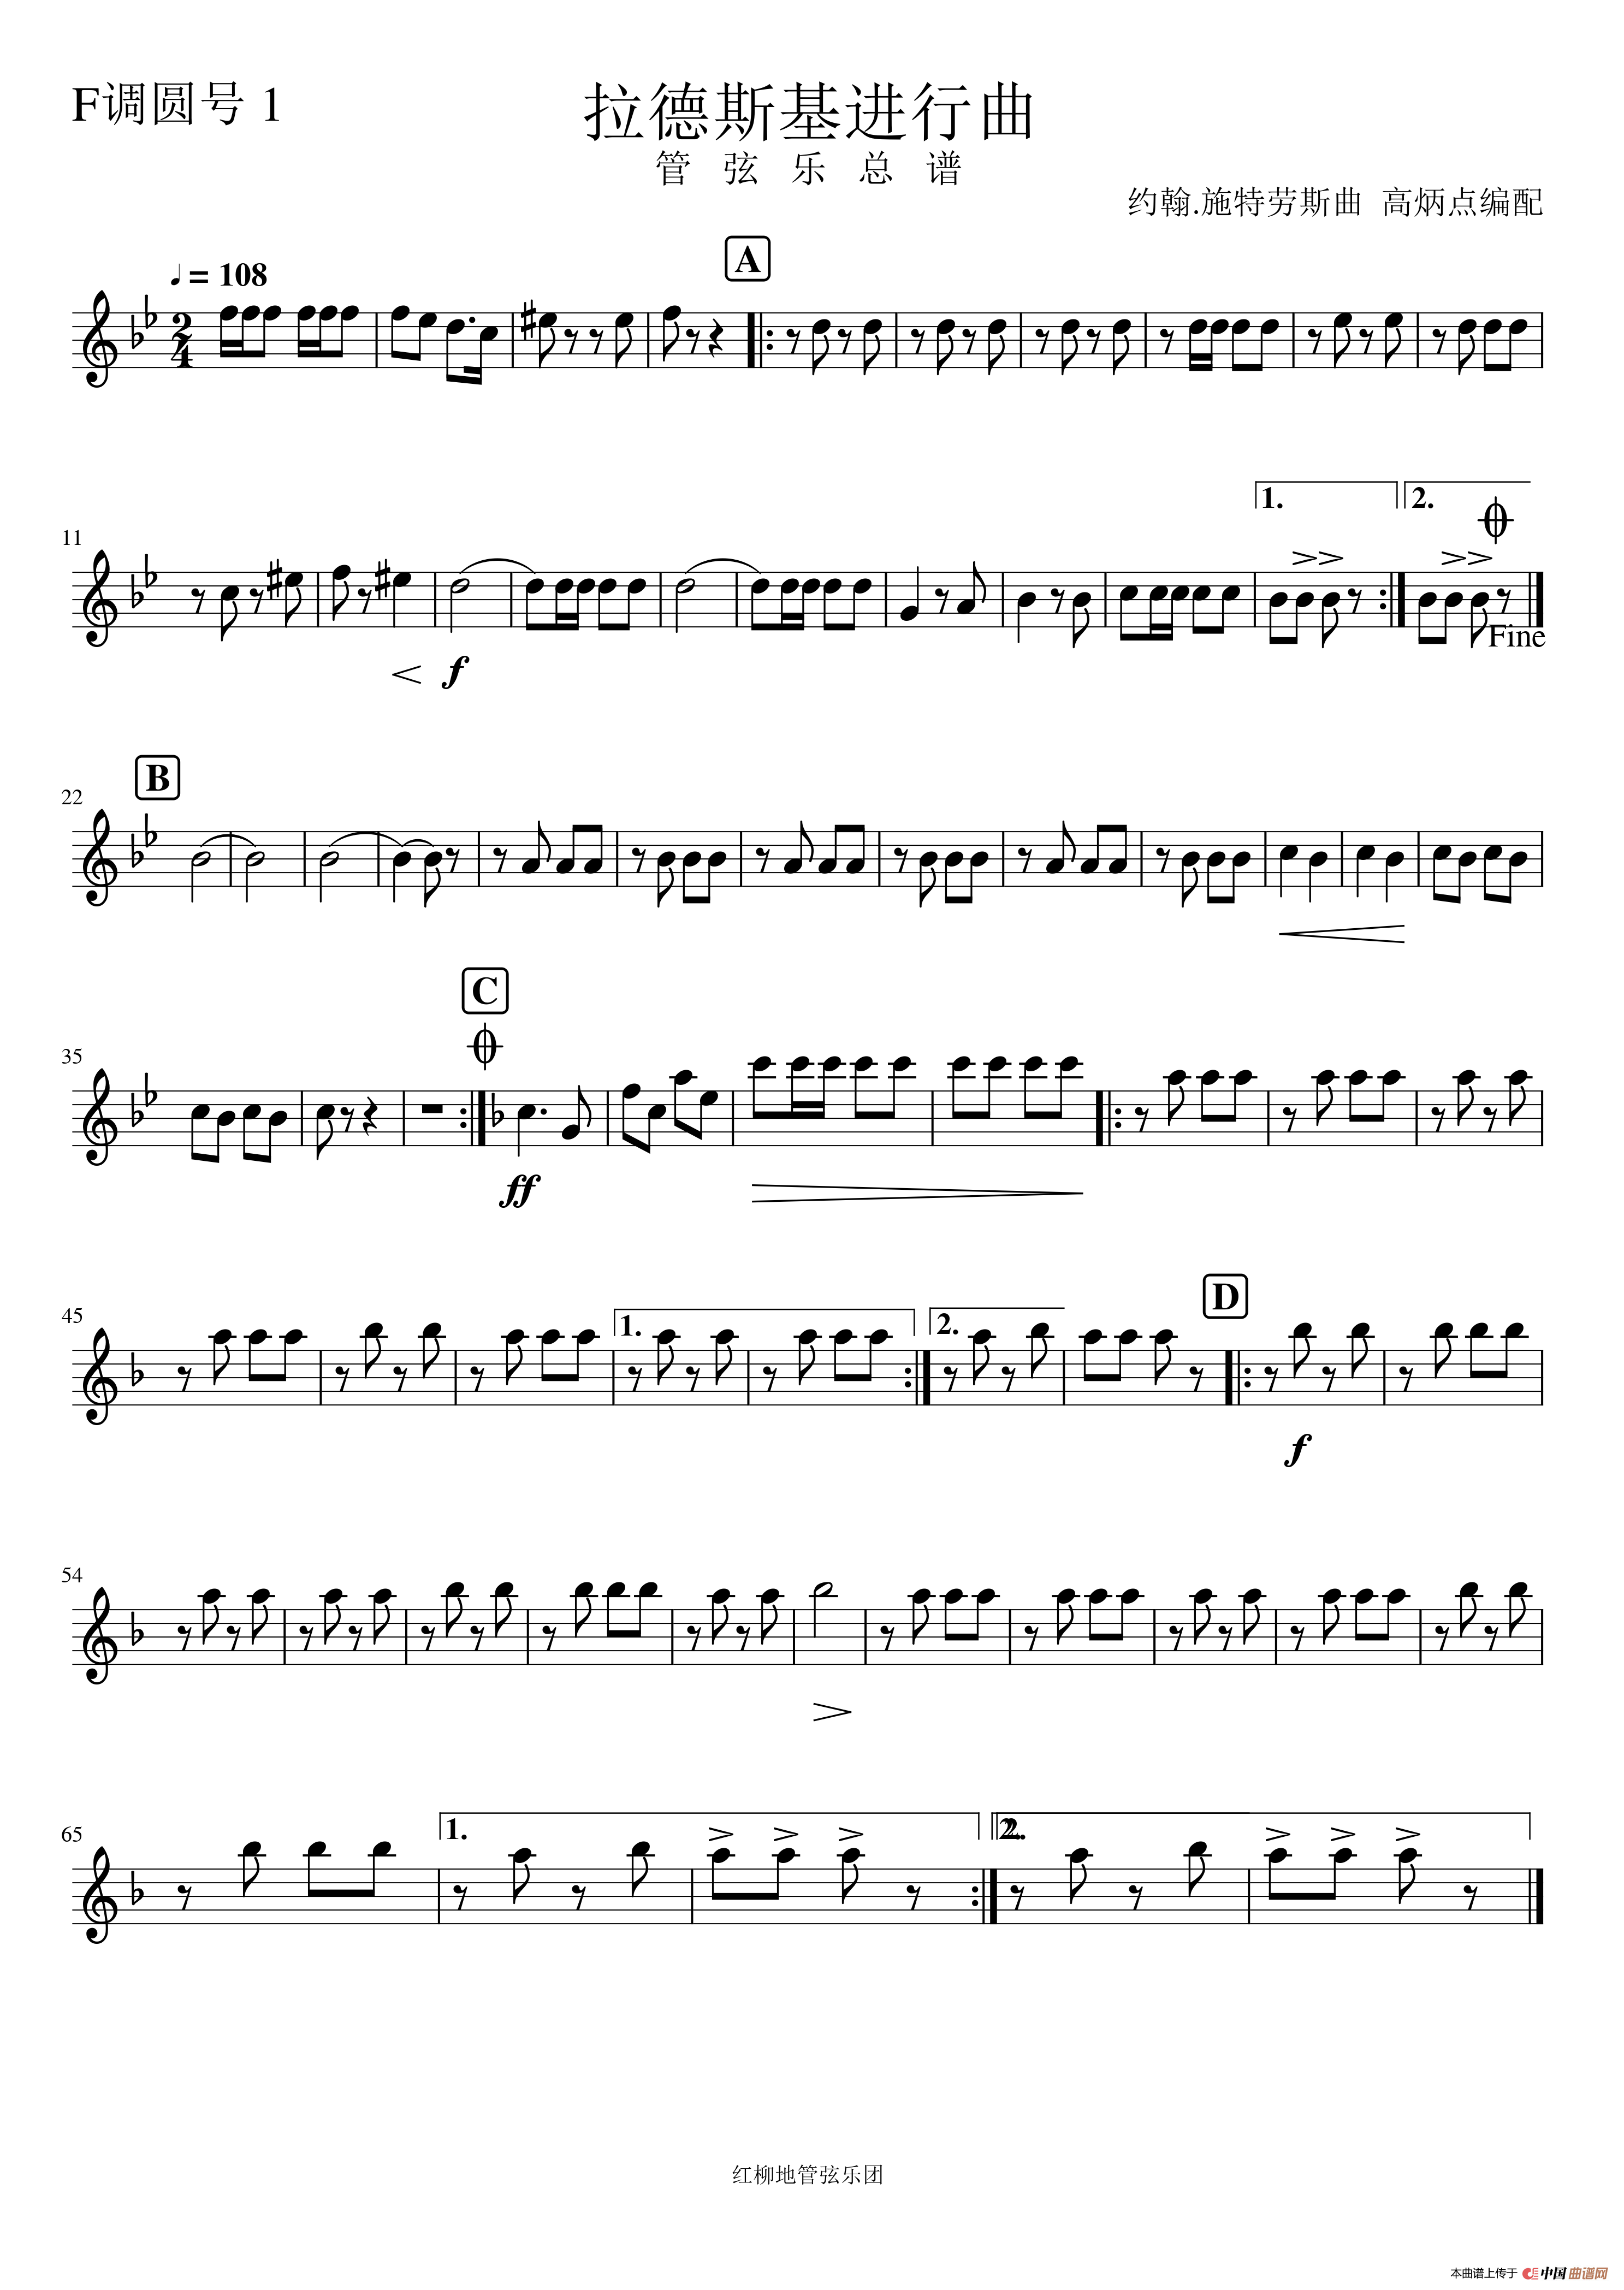 拉德斯基进行曲(管弦乐总谱与分谱)(1)_原文件名:圆号1.png